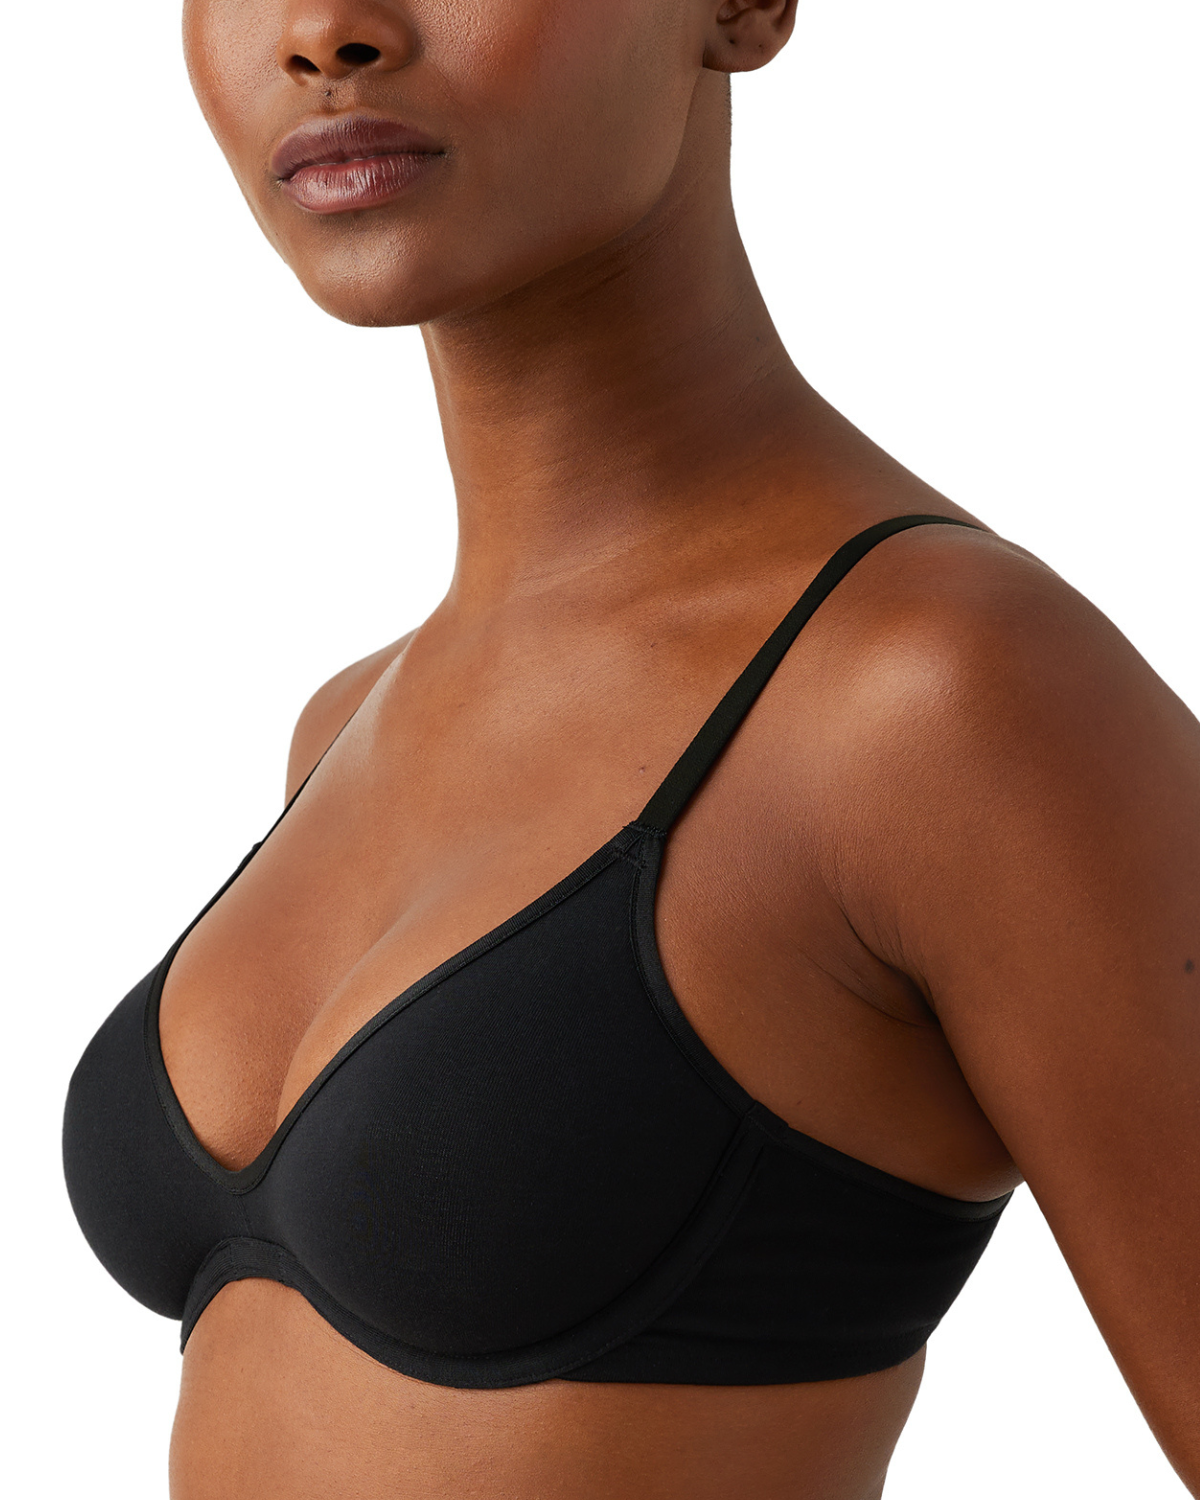 Model wearing a scoop neck underwire t-shirt bra in black